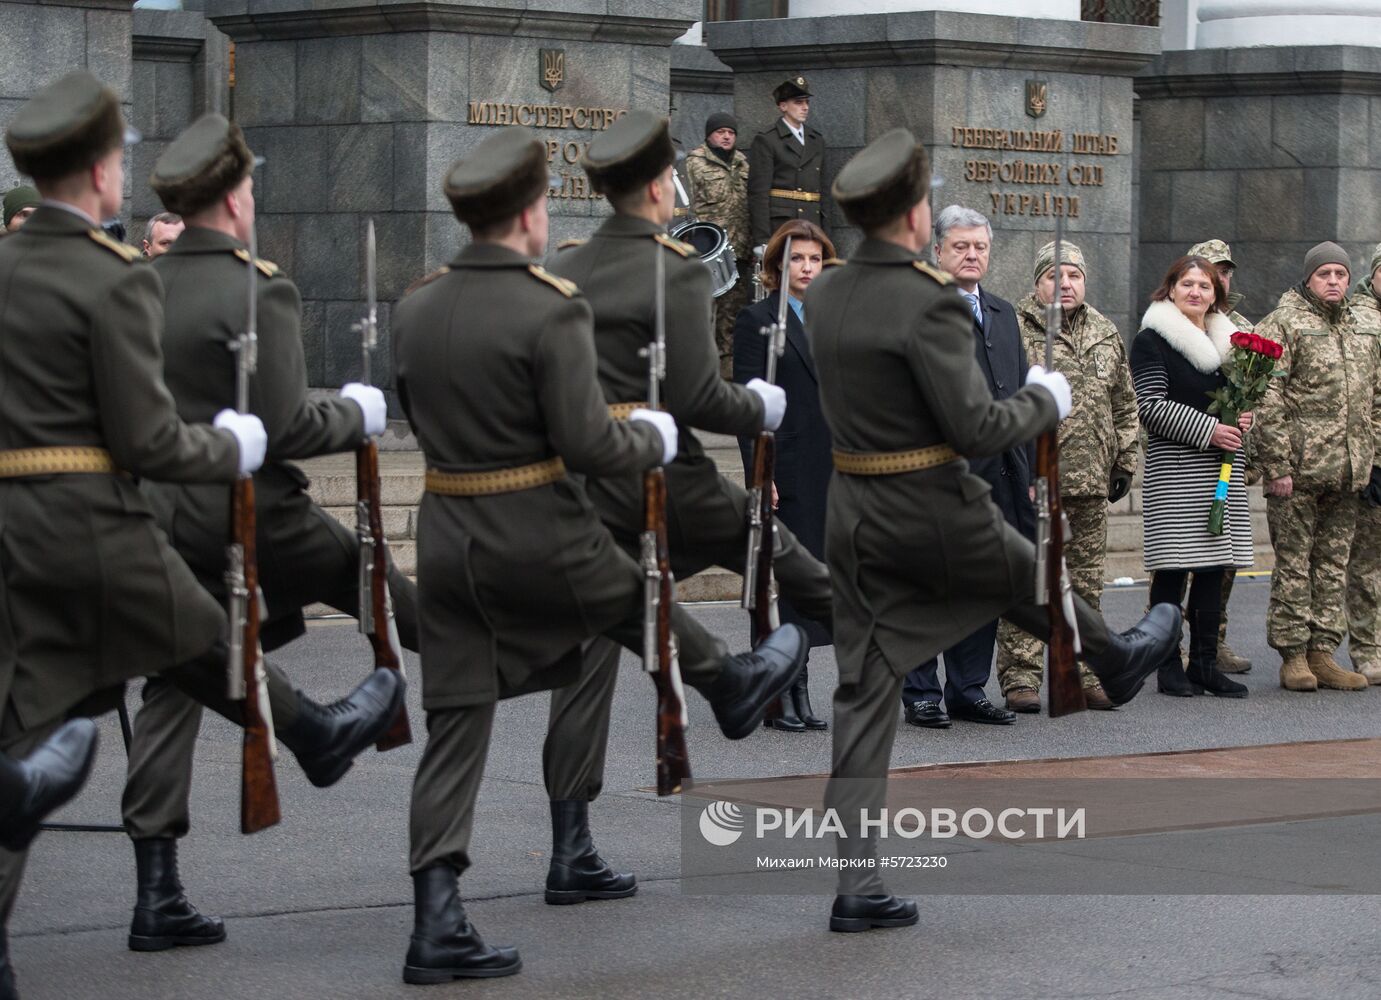 Президент Украины П. Порошенко посетил траурные мероприятия памяти погибших украинских воинов